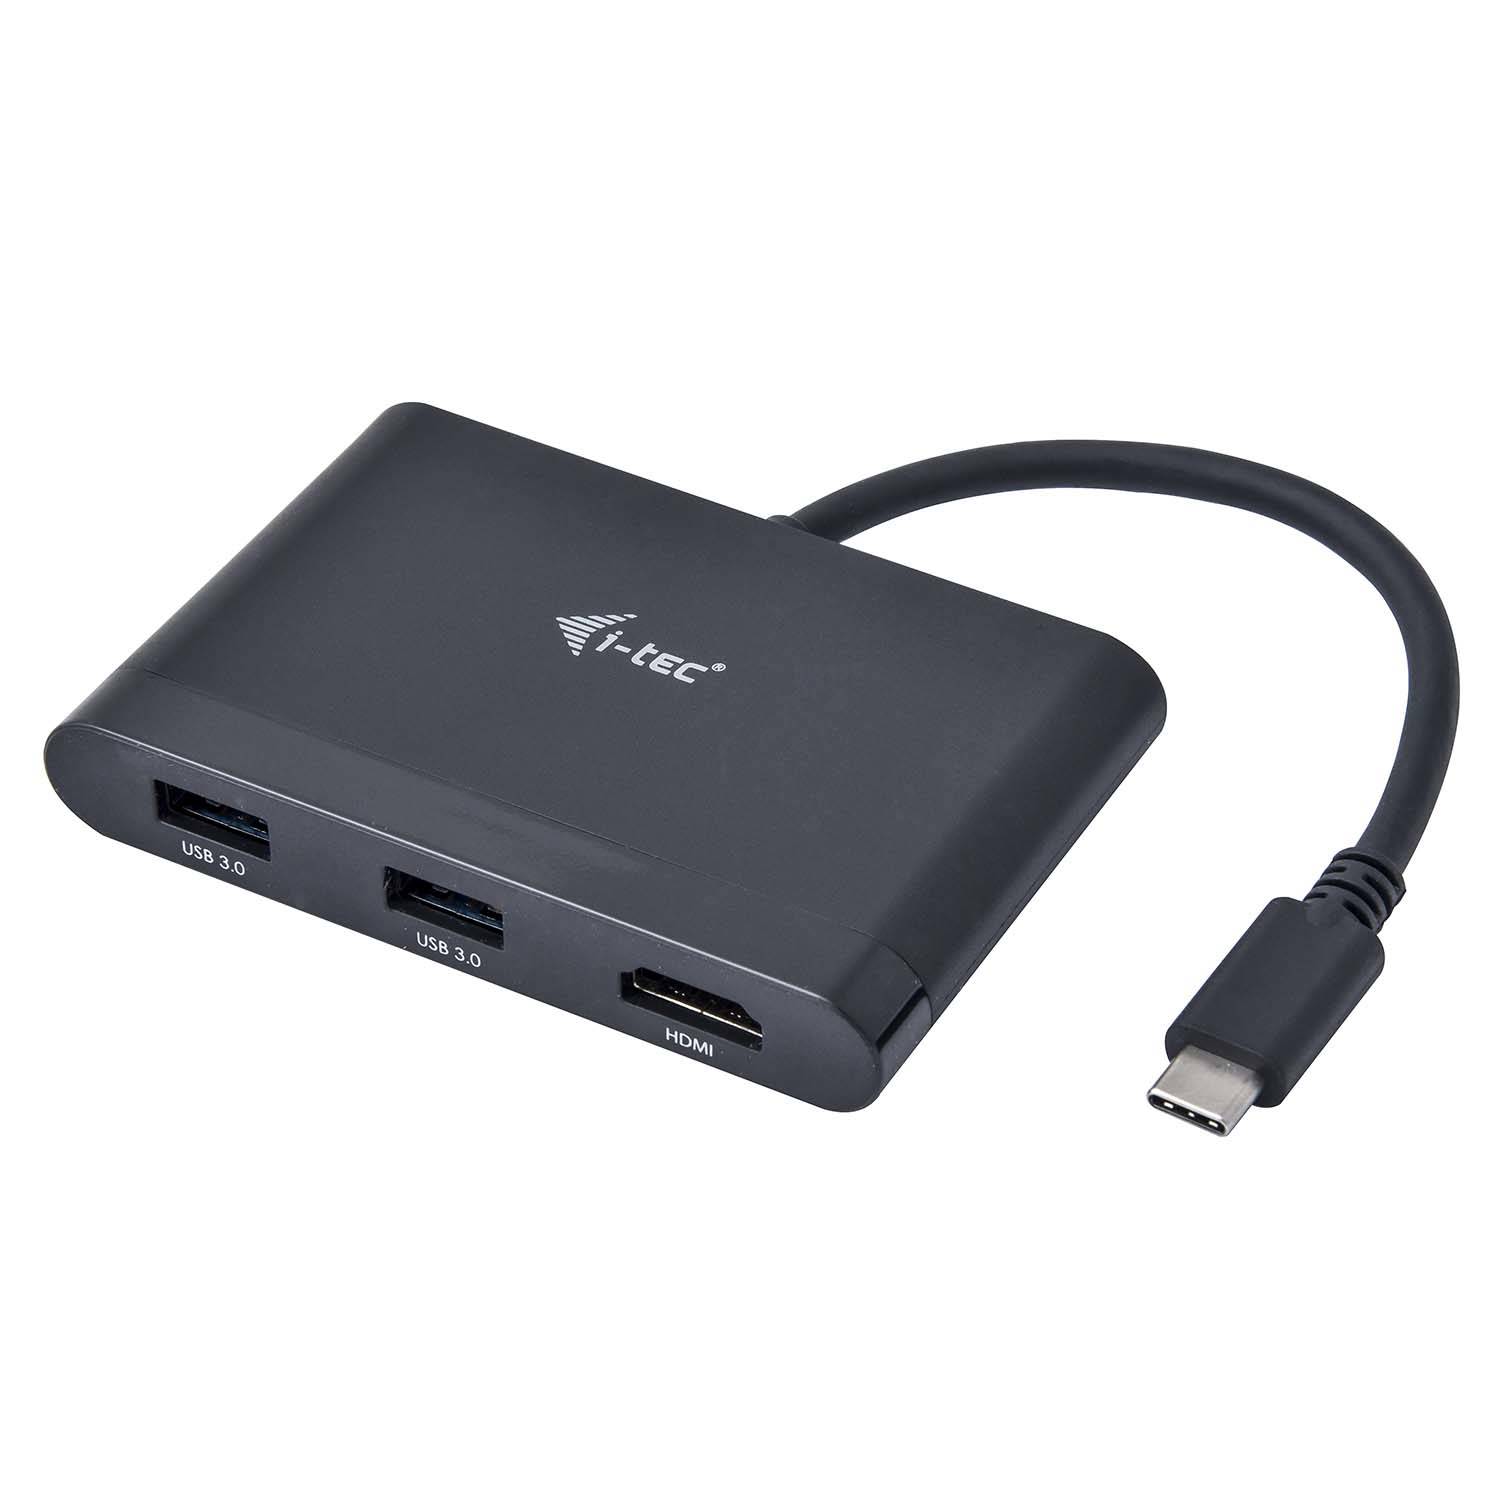 Rca Informatique - Image du produit : I-TEC USB C TRAVEL ADAPTER W PD 4K HDMI/ USB 3.0/ USB-C PD/DATA